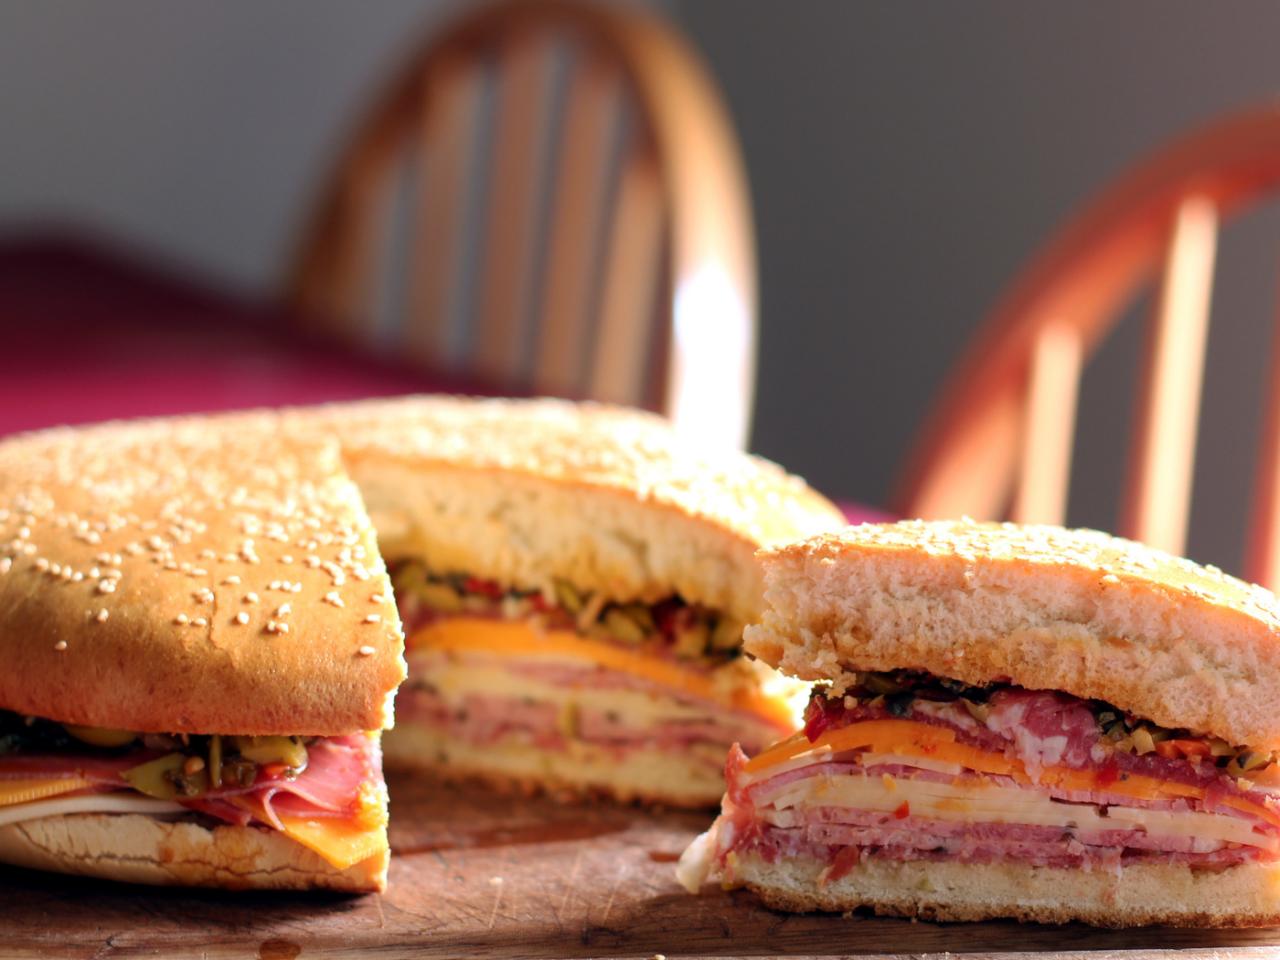 обои Нарезанный сэндвич фото